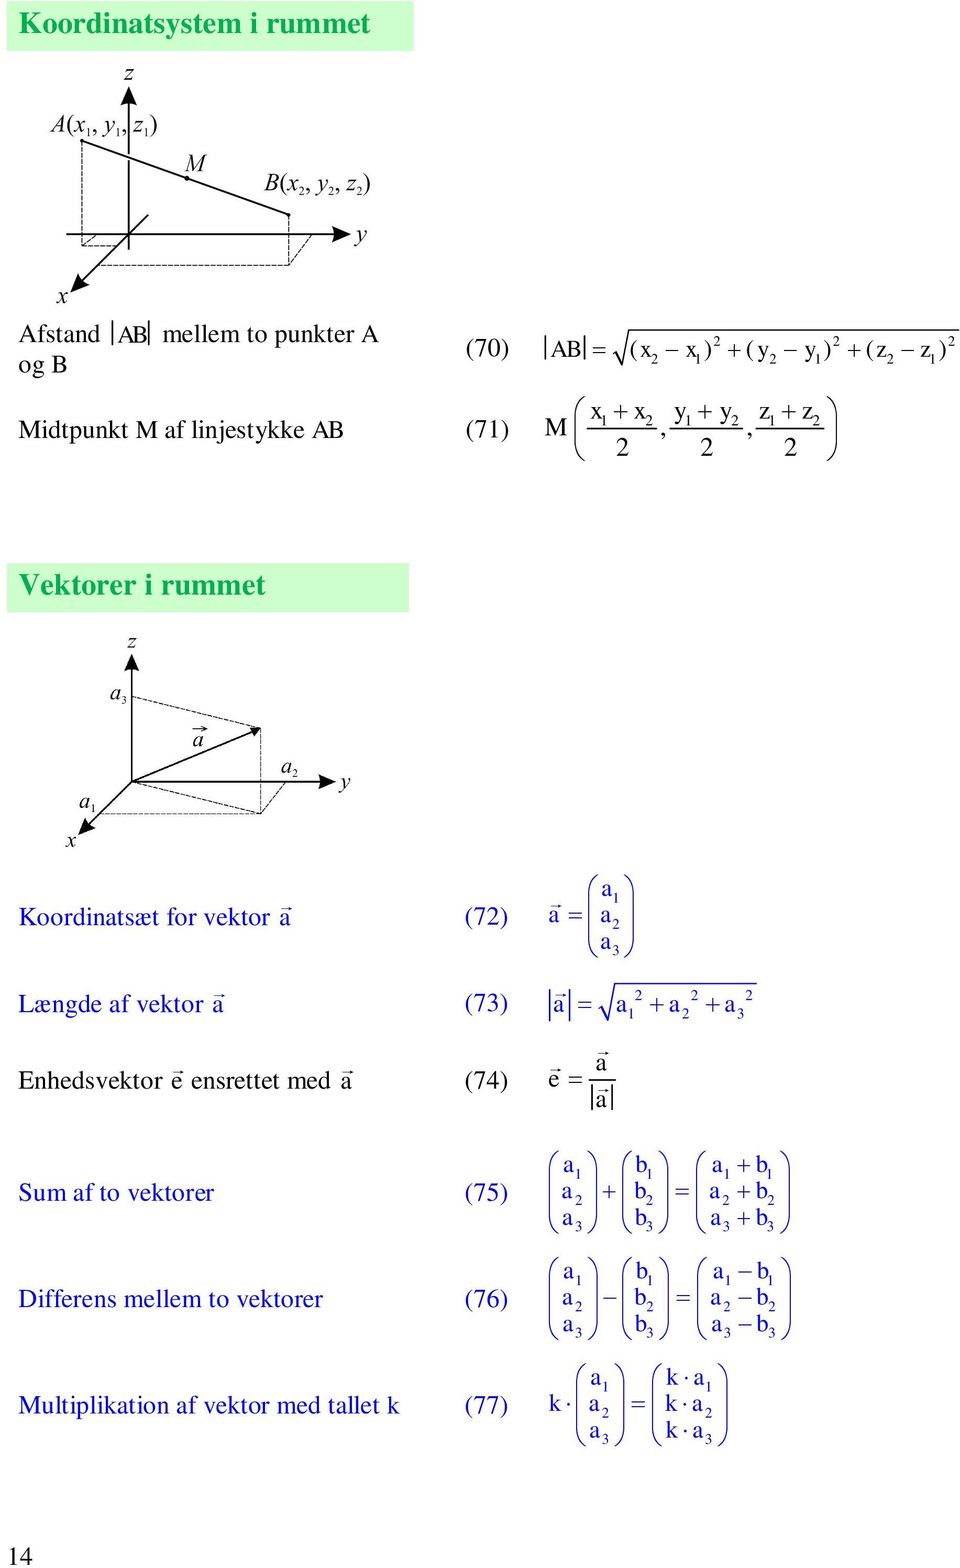 Længde f vektor (73) Enhedsvektor e ensrettet med (74) Sum f to vektorer (75) Differens